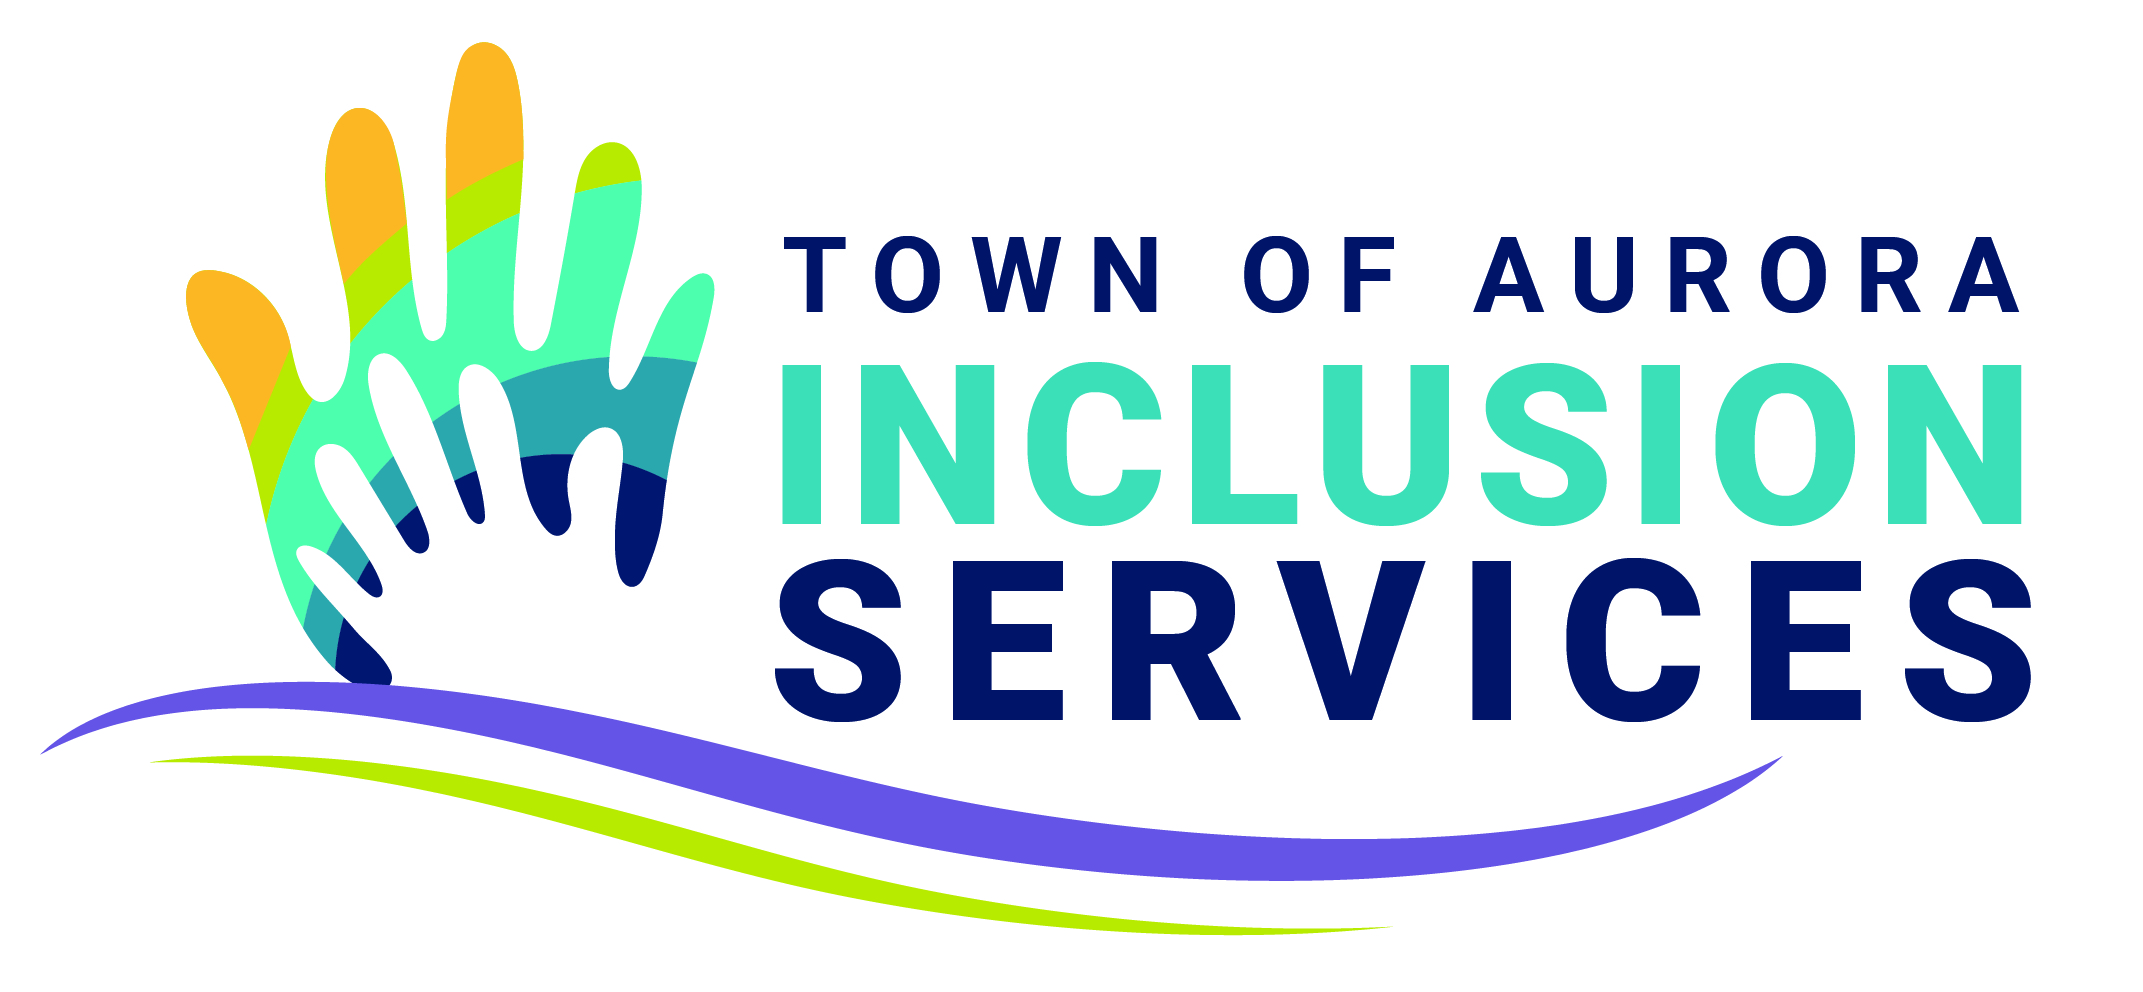 Inclusion services icon